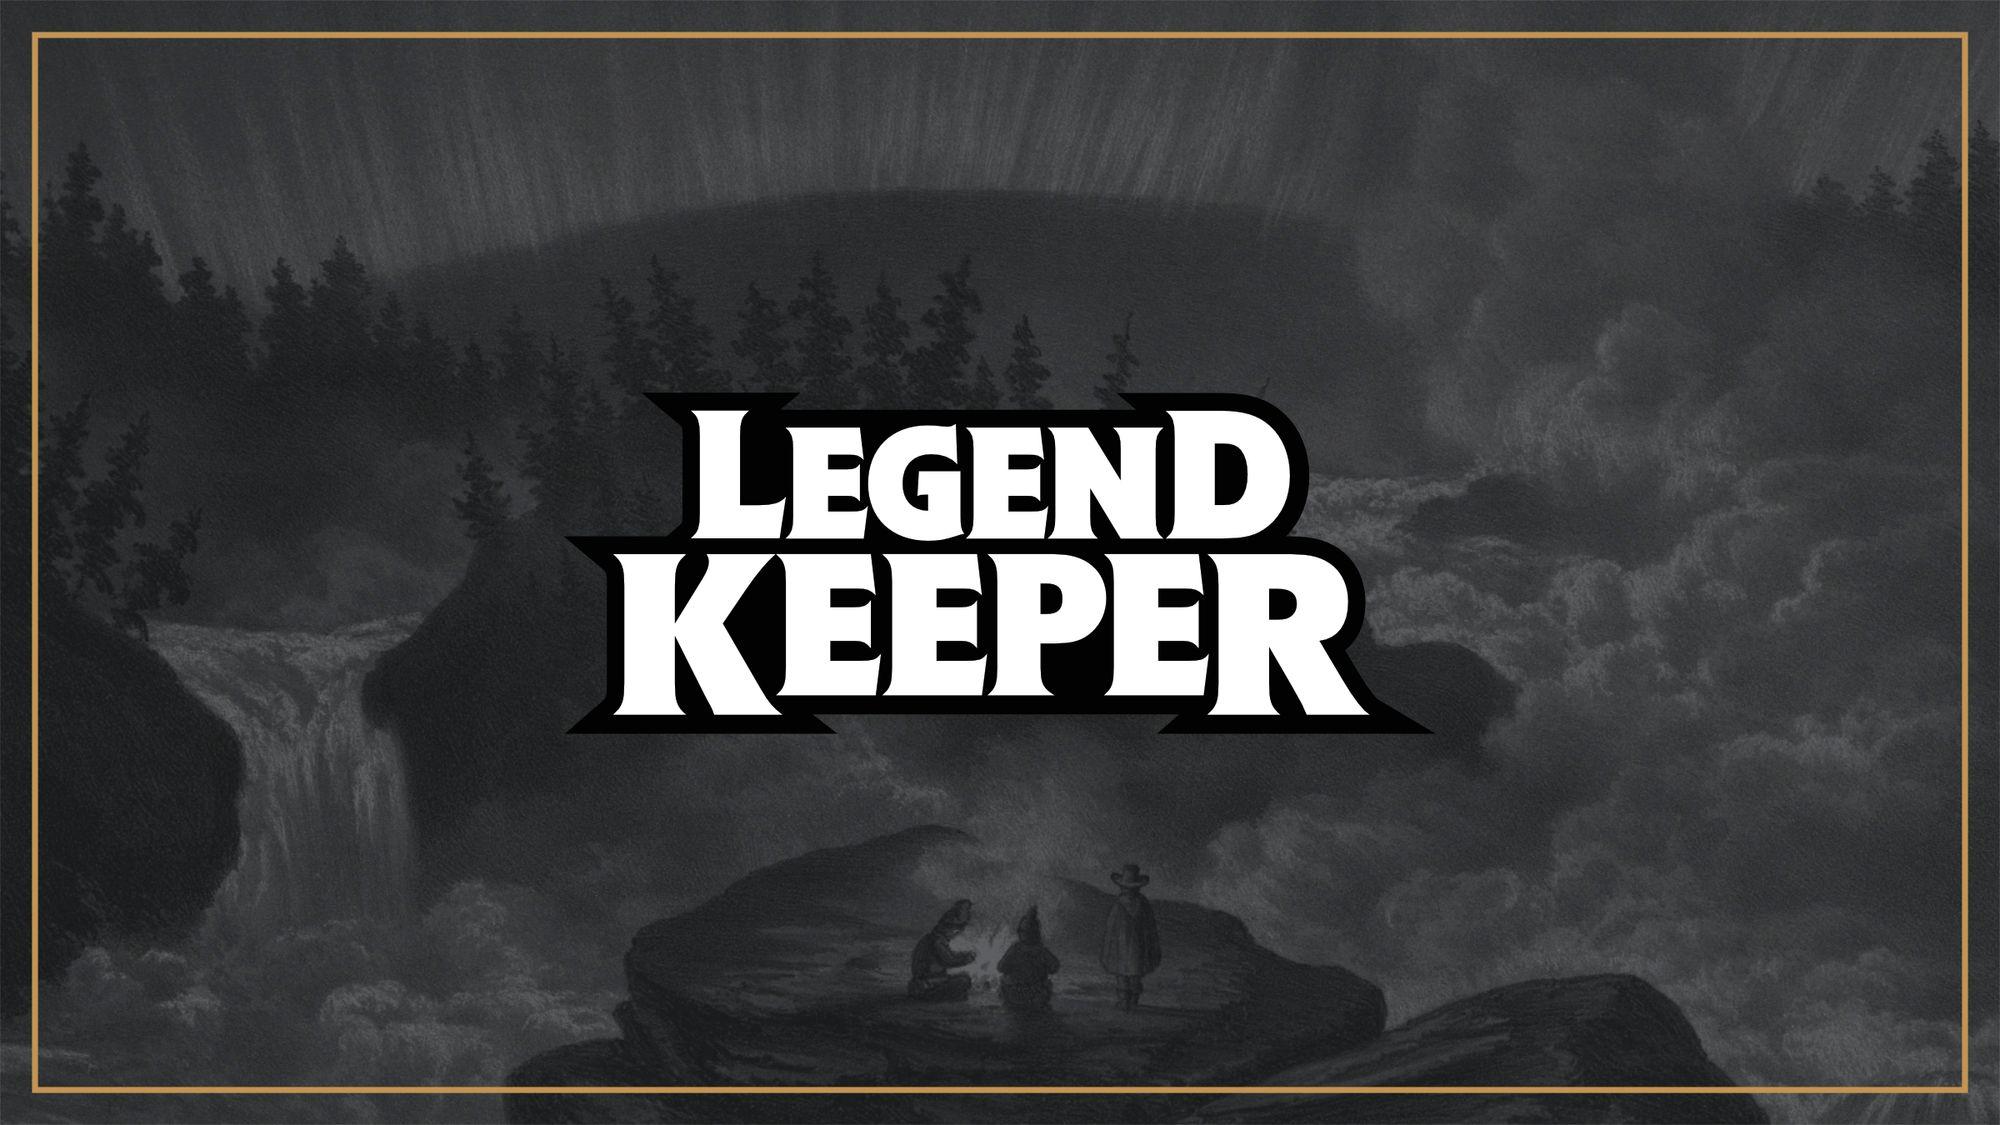 LegendKeeper is Growing: Welcome Adam!